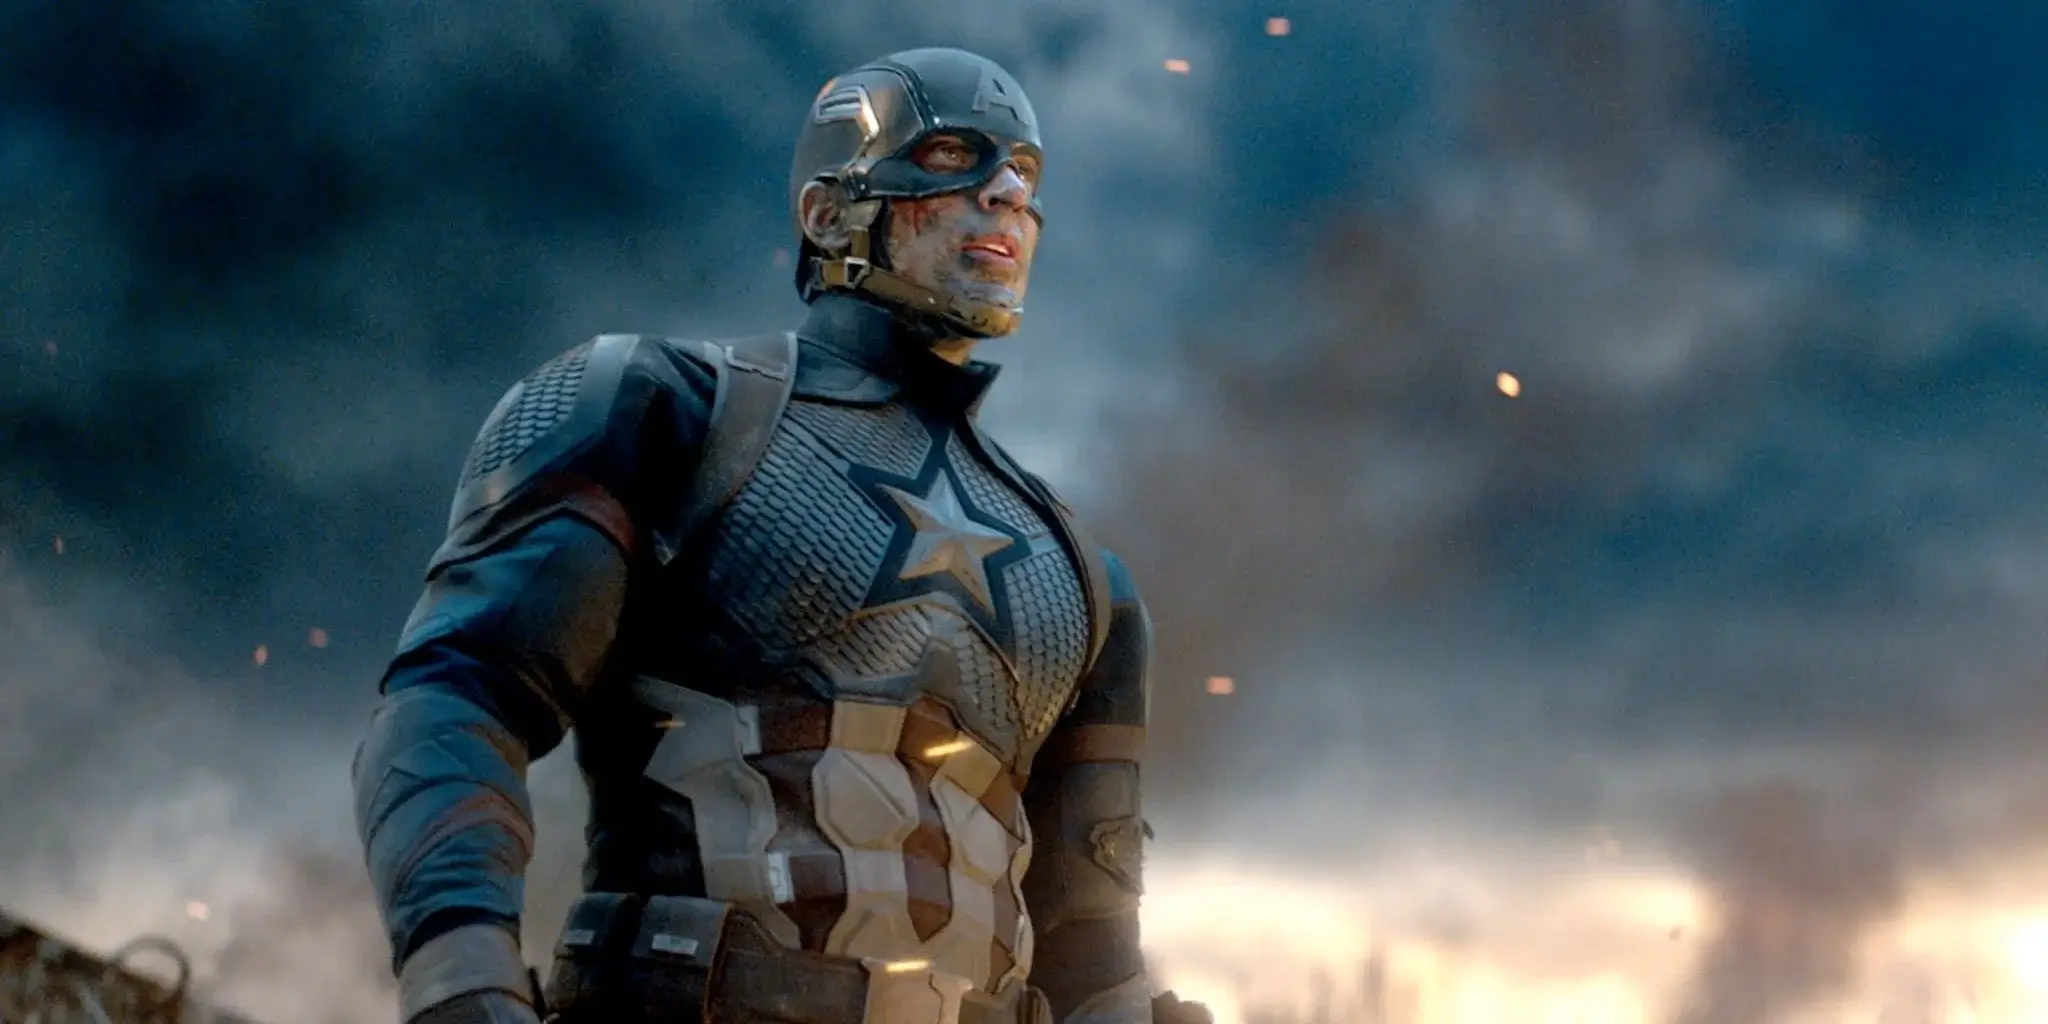 Chris Evans in Avengers: Endgame as Steve Rogers 